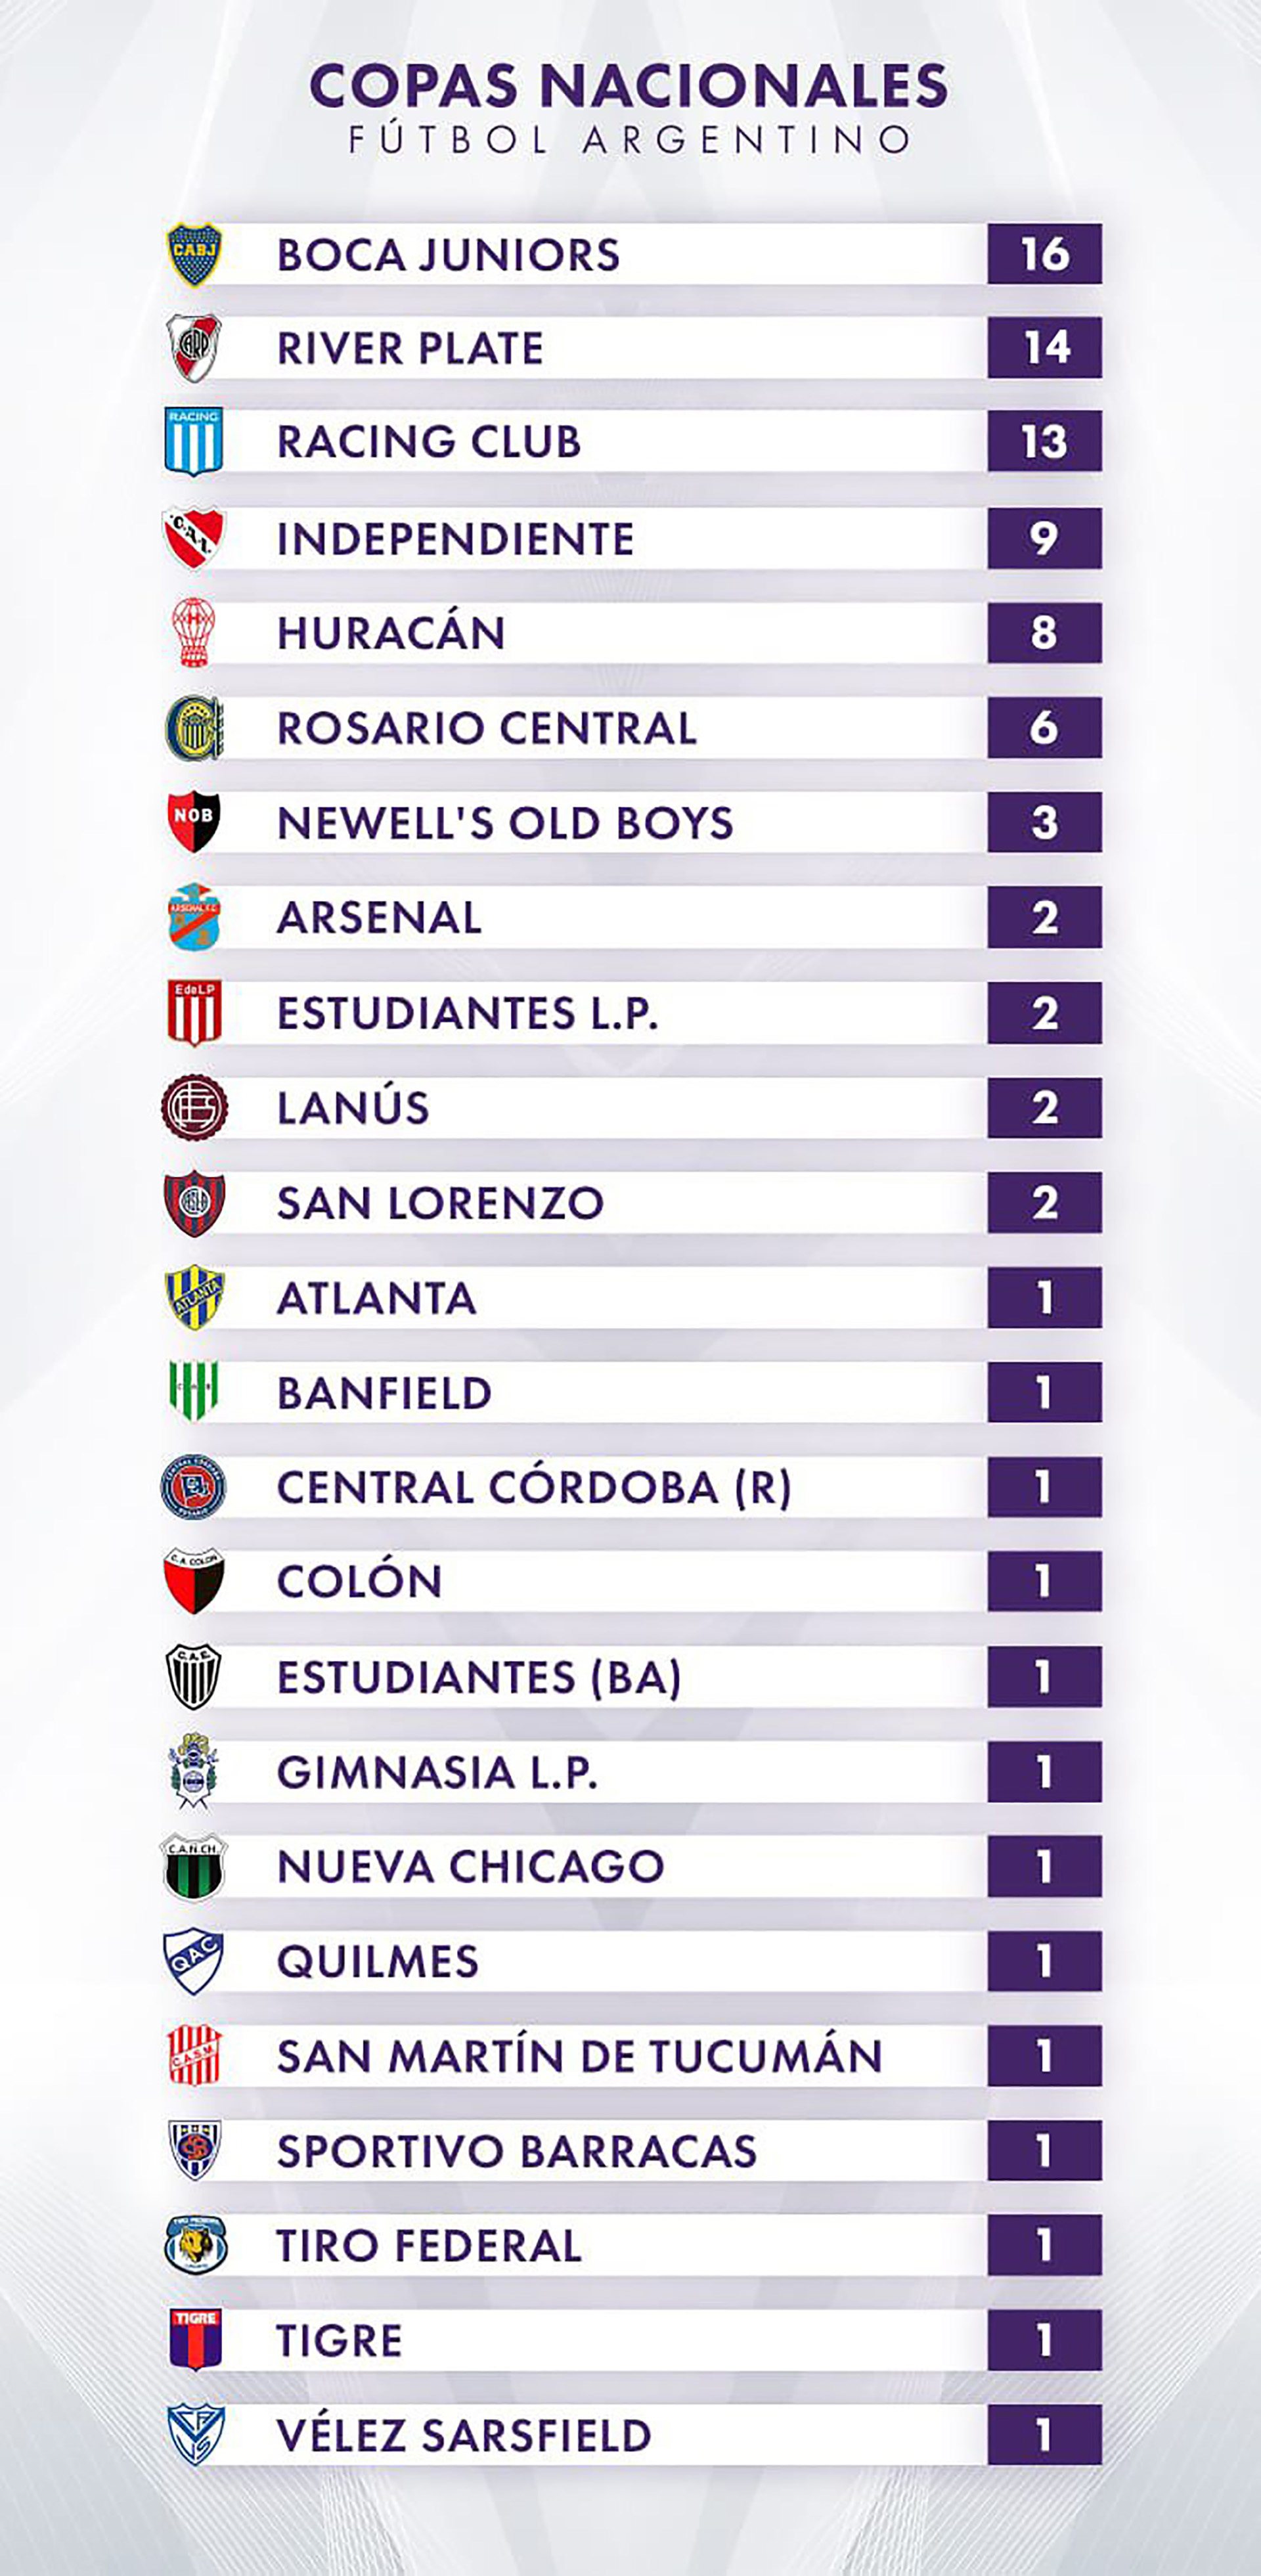 La Tabla de Copas Nacionales del fútbol argentino (Fuente: rhdelfutbol)